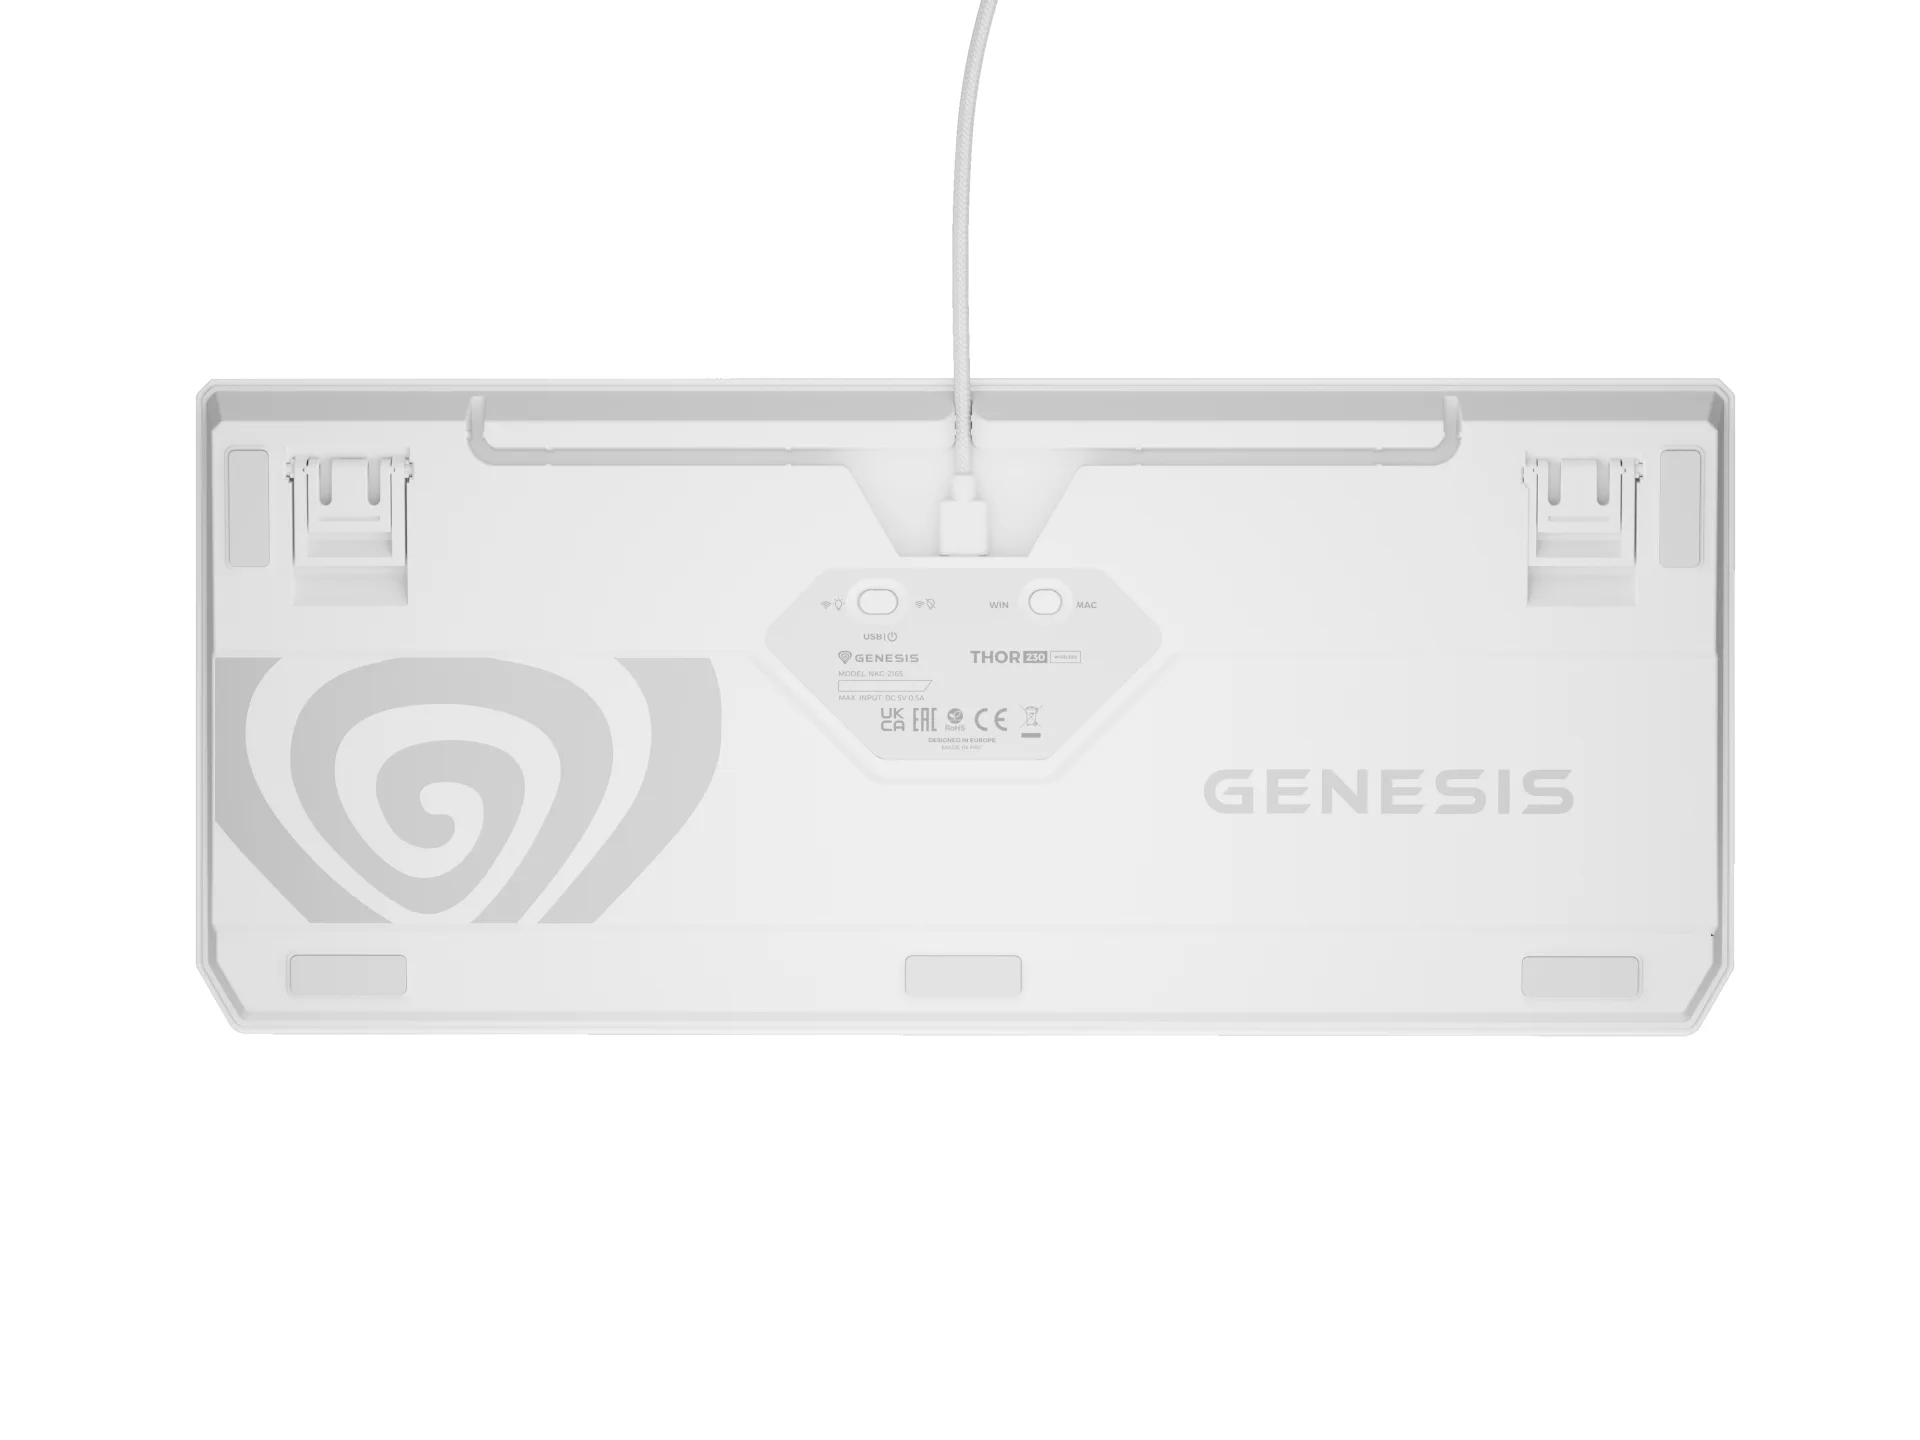 Genesis Thor 230 TKL Wireless